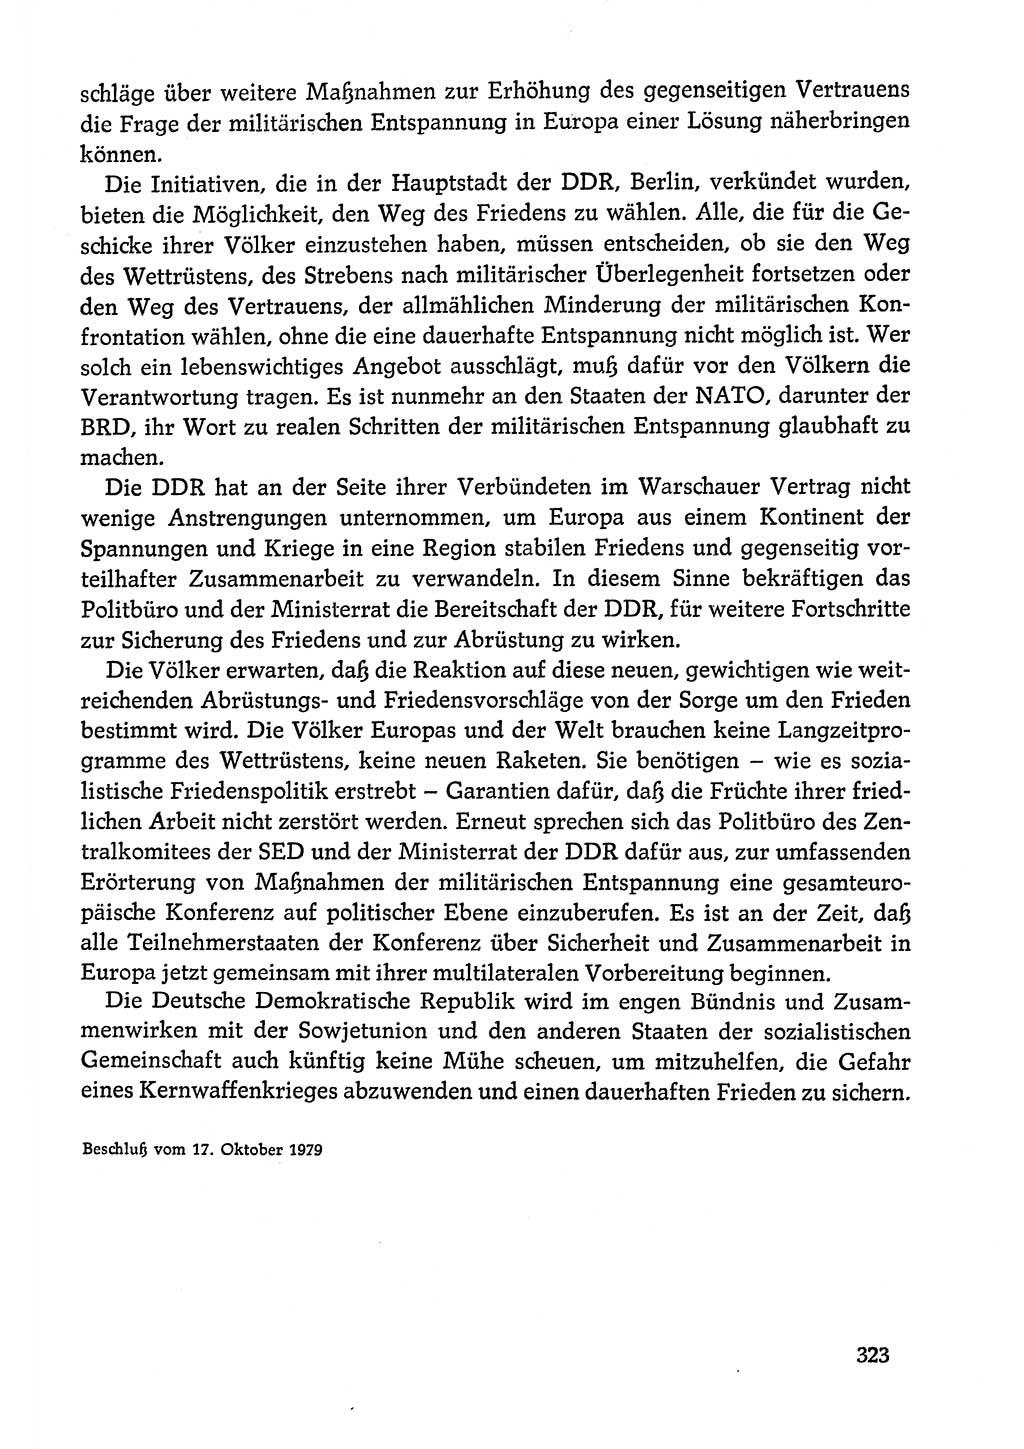 Dokumente der Sozialistischen Einheitspartei Deutschlands (SED) [Deutsche Demokratische Republik (DDR)] 1978-1979, Seite 323 (Dok. SED DDR 1978-1979, S. 323)